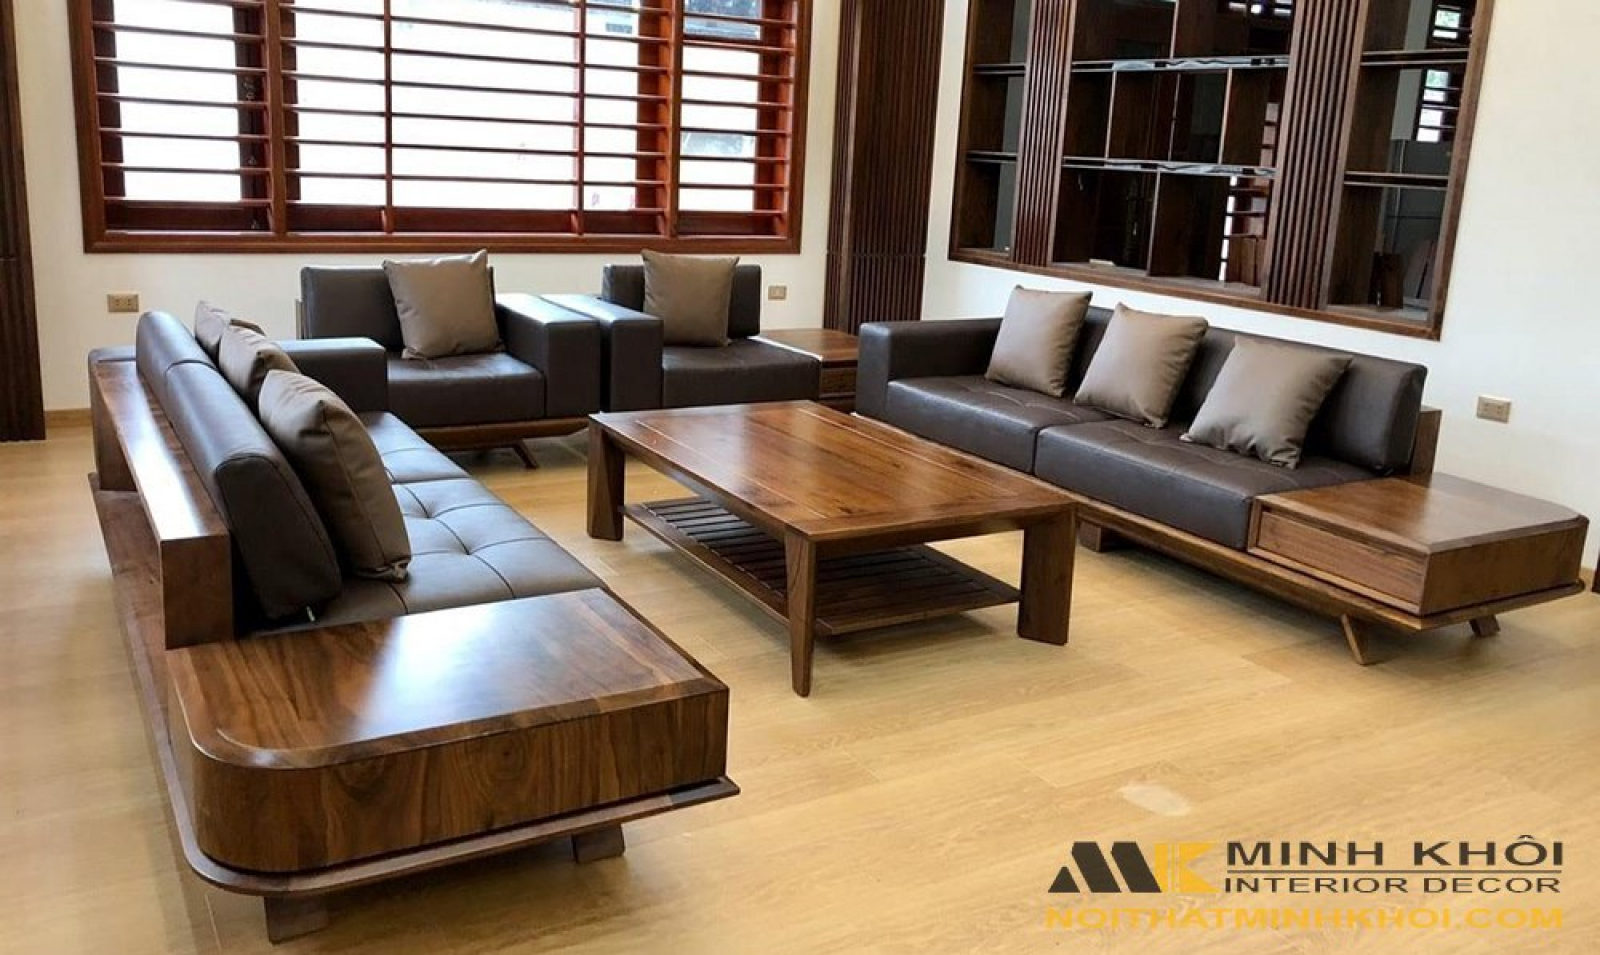 Bàn ghế sofa gỗ sồi Nga: Với chất liệu gỗ sồi Nga cao cấp, bộ bàn ghế sofa này sẽ mang đến một không gian phòng khách hiện đại và sang trọng. Thiết kế tinh xảo, màu sắc ấn tượng và đường nét hoàn hảo, bộ sofa gỗ sồi Nga này chắc chắn sẽ là sự lựa chọn hoàn hảo cho không gian sống của bạn.